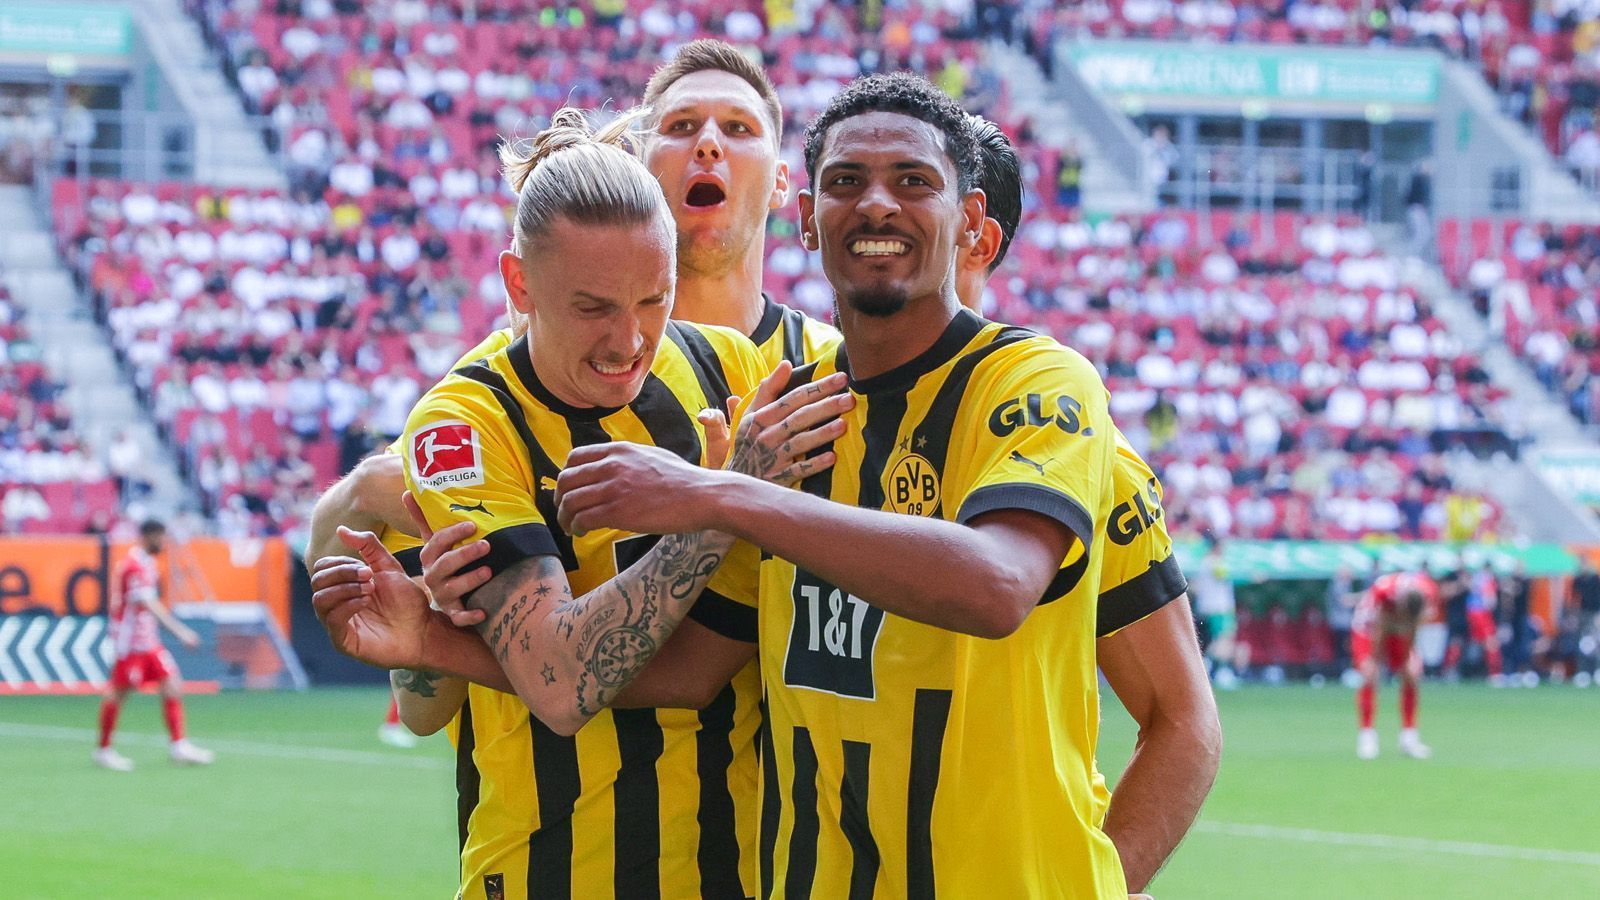 
                <strong>Gewinner: Borussia Dortmund</strong><br>
                Borussia Dortmund fehlt nur noch ein Sieg zum sicheren Gewinn der Meisterschaft. Auf der Zielgeraden überholte der BVB mit einem 3:0 beim FC Augsburg den FC Bayern München und nutzt deren möglicherweise folgenschweren Patzer. Sebastien Haller war der entscheidende Knotenlöser und mit zwei Treffern der Matchwinner. Der BVB bewies damit, dass er unter Druck liefern kann und ist nur noch einen Schritt von der ersten Meisterschale seit 2012 entfernt.
              